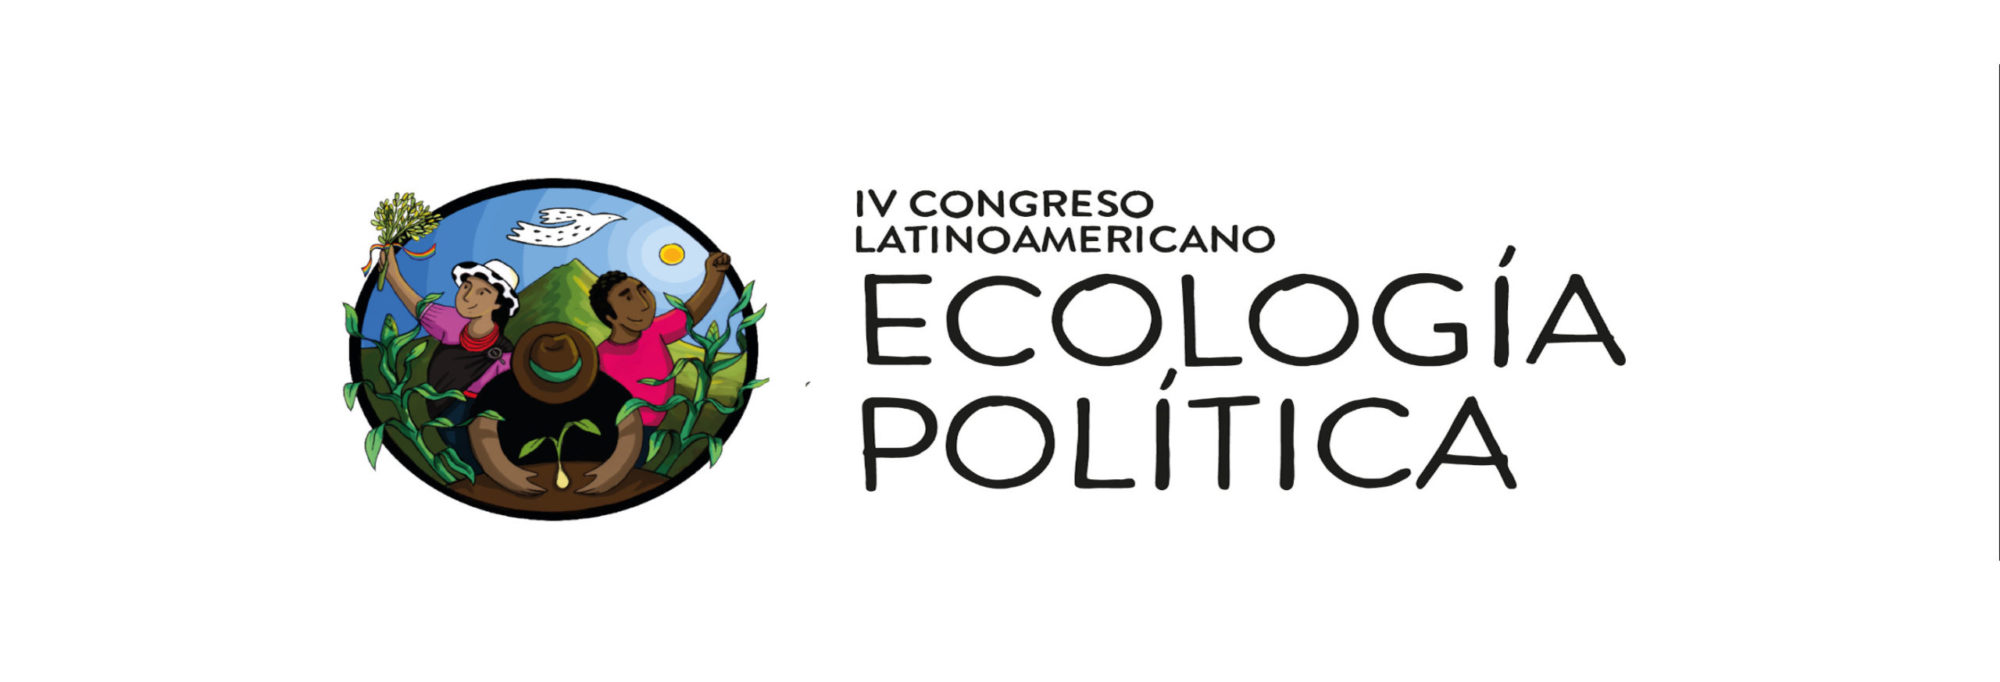 IV Congreso Latinoamericano de Ecología Política. Ecología Política y Pensamiento Crítico Latinoamericano: Raíces, Trayectorias y Miradas al Futuro